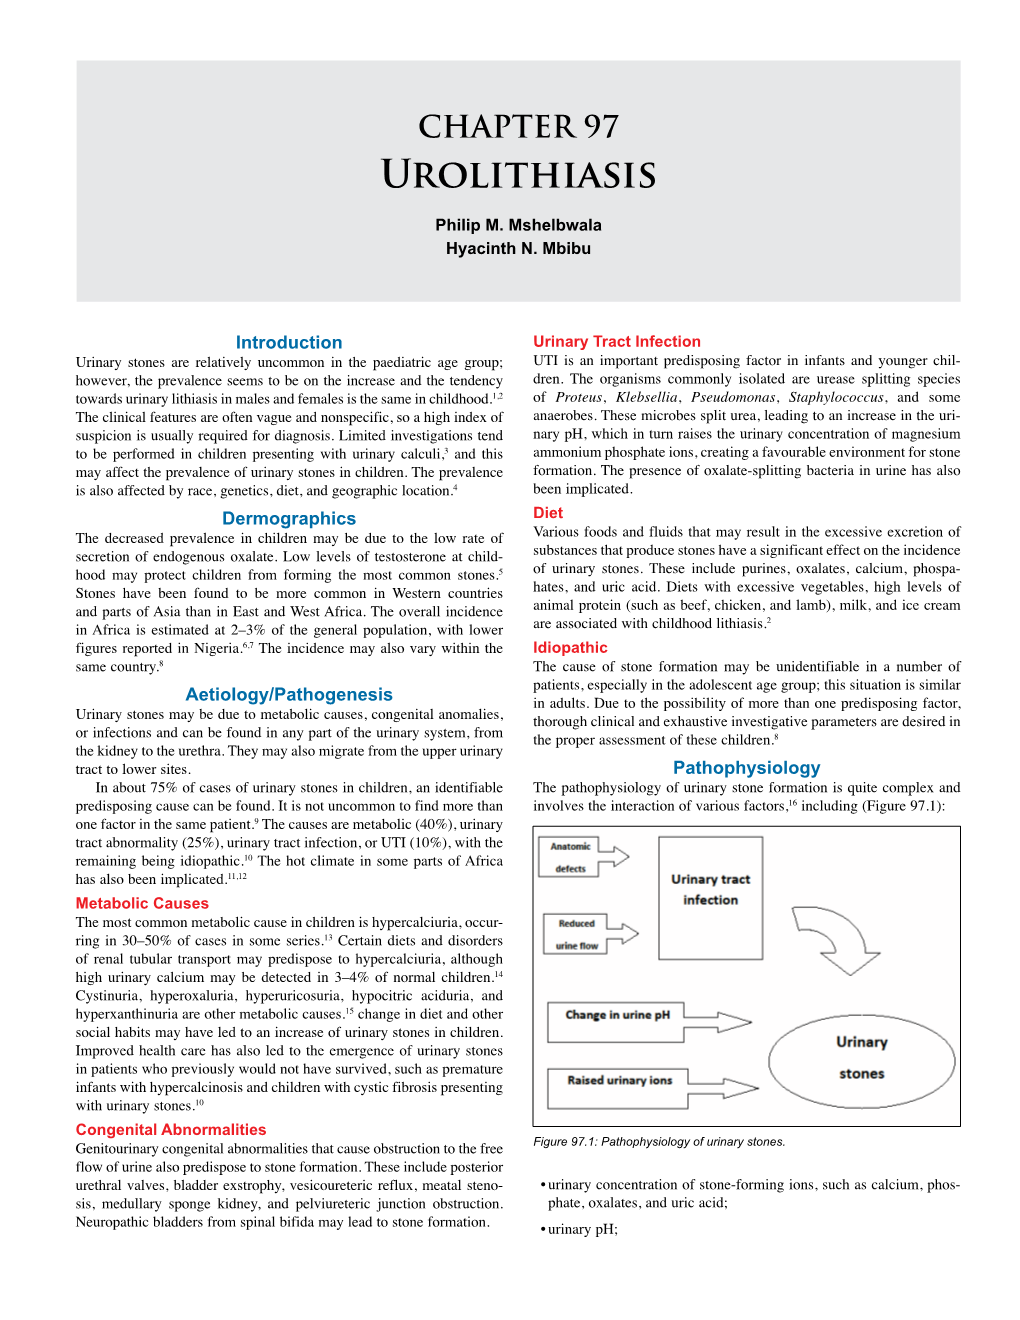 CHAPTER 97 Urolithiasis